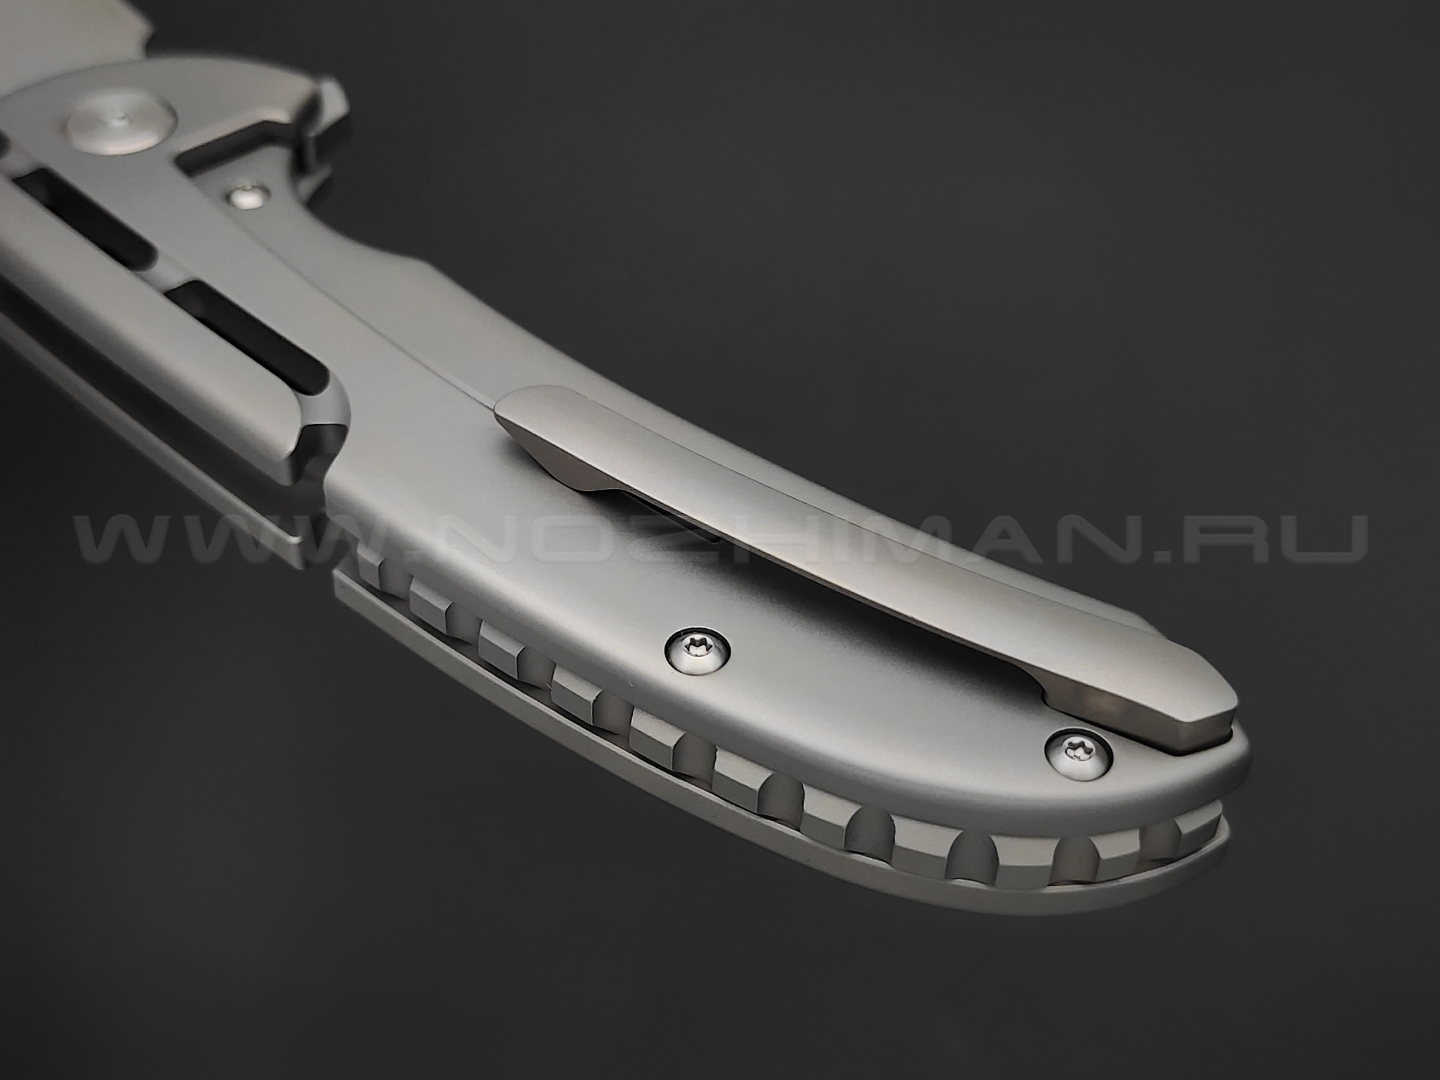 Нож Artisan Cutlery Valor 1850G-GY сталь CPM S35VN, рукоять Titanium 6AL4V grey